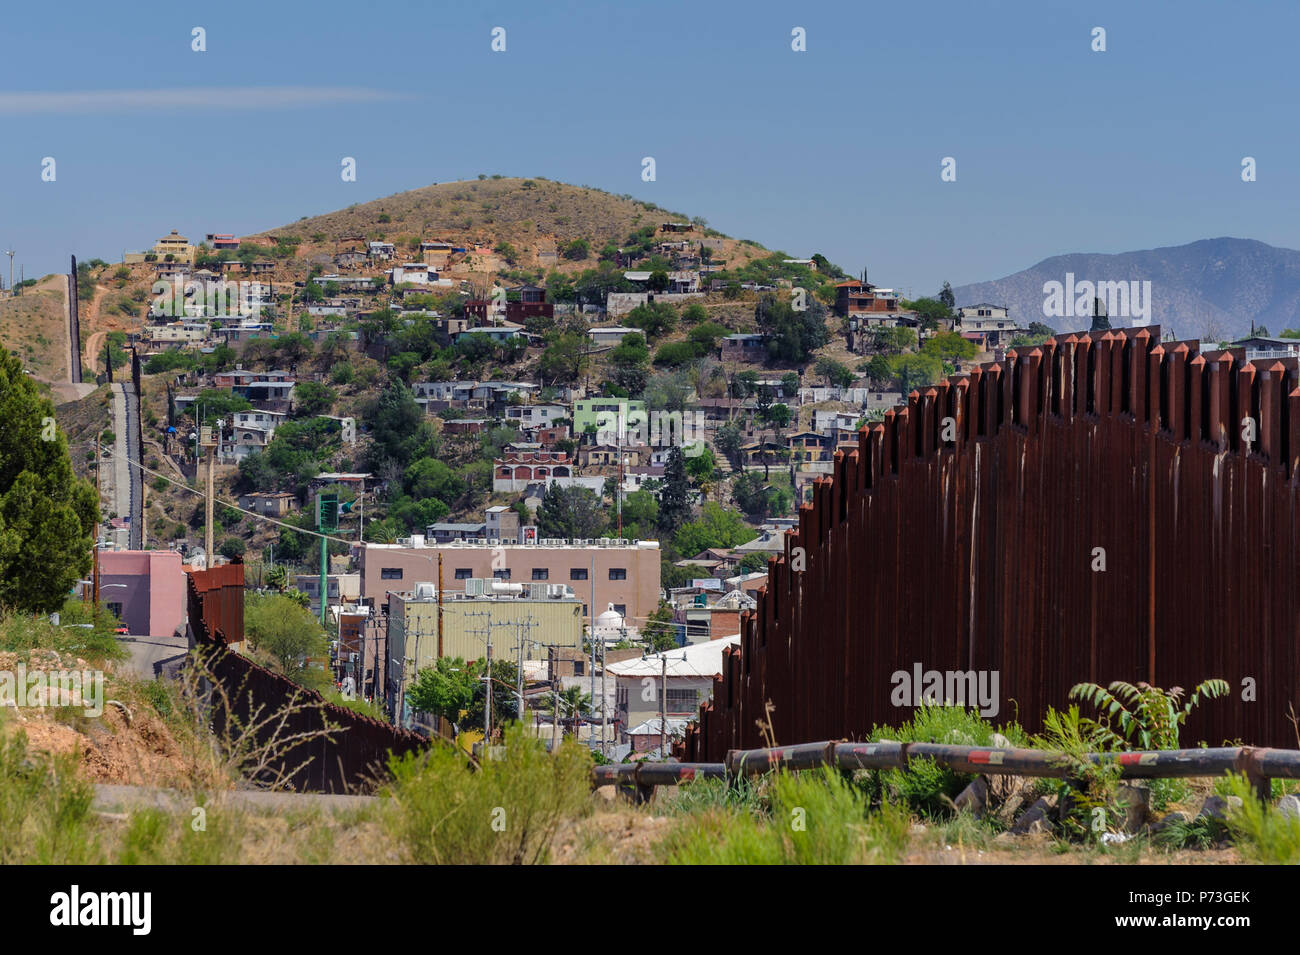 United States Frontière, barrière piétonne, à l'est du côté des États-Unis, montrant Nogales Sonora au Mexique sur la colline. 12 avril 2018 Banque D'Images